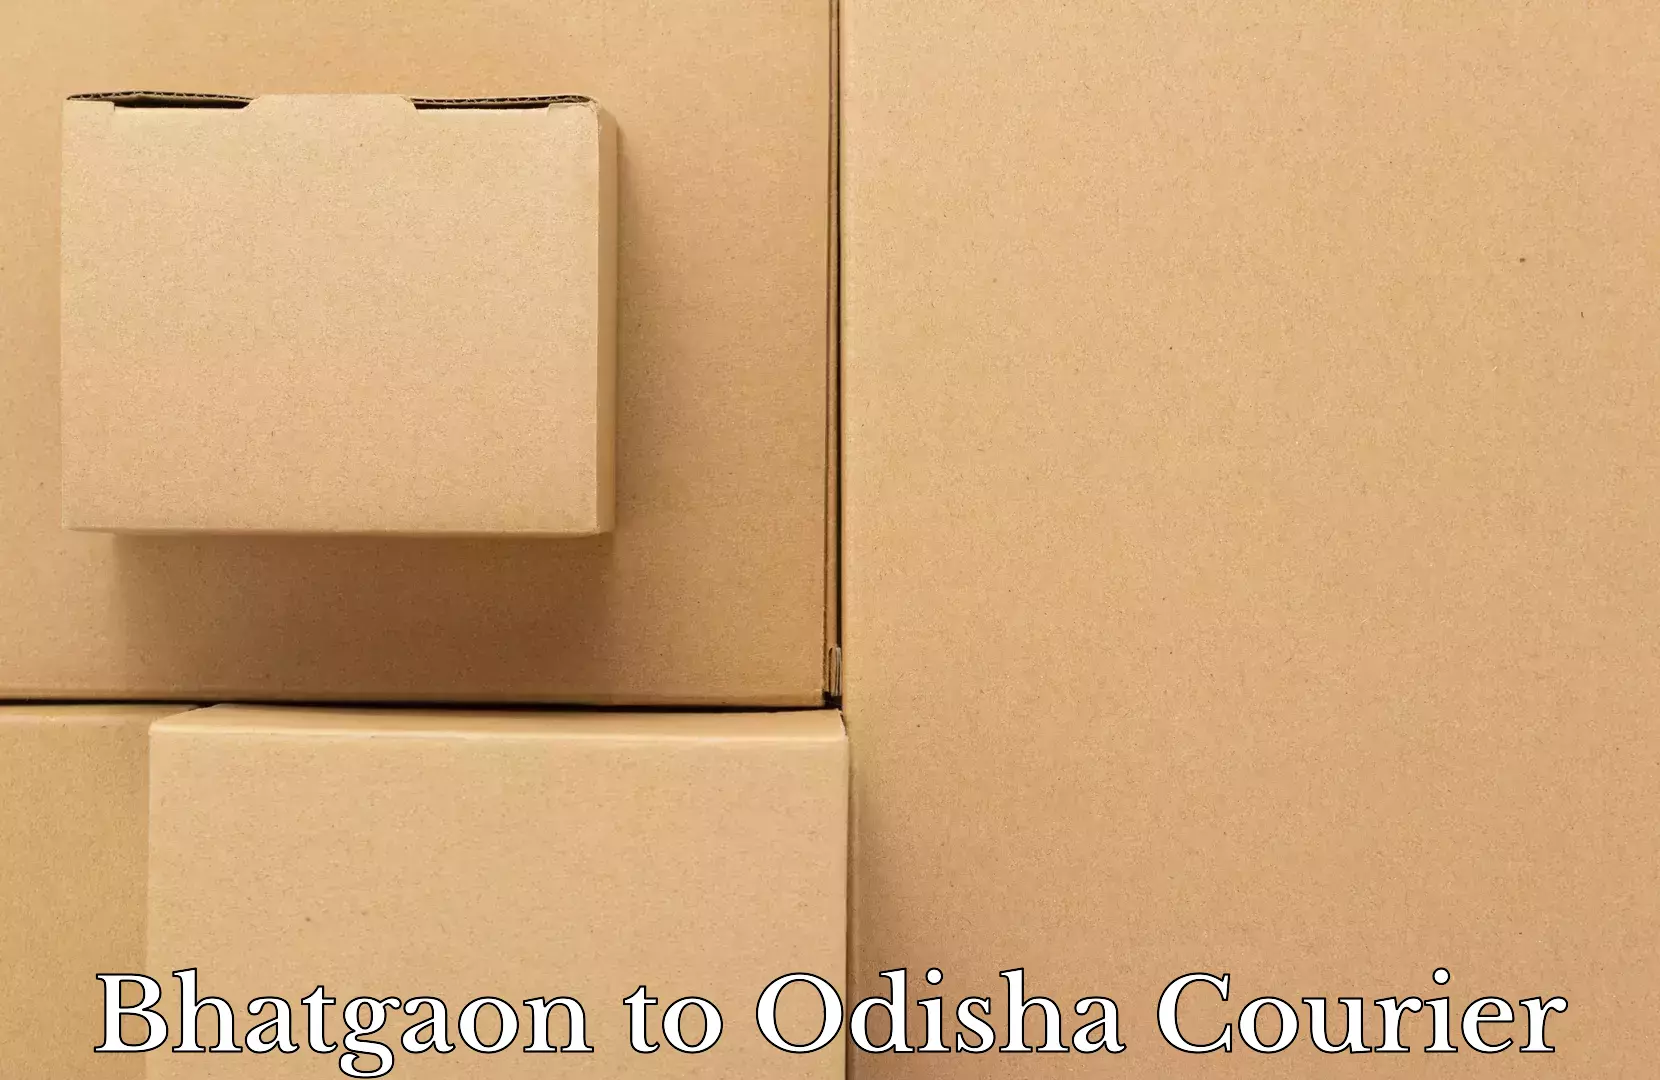 Luggage transit service Bhatgaon to Odisha